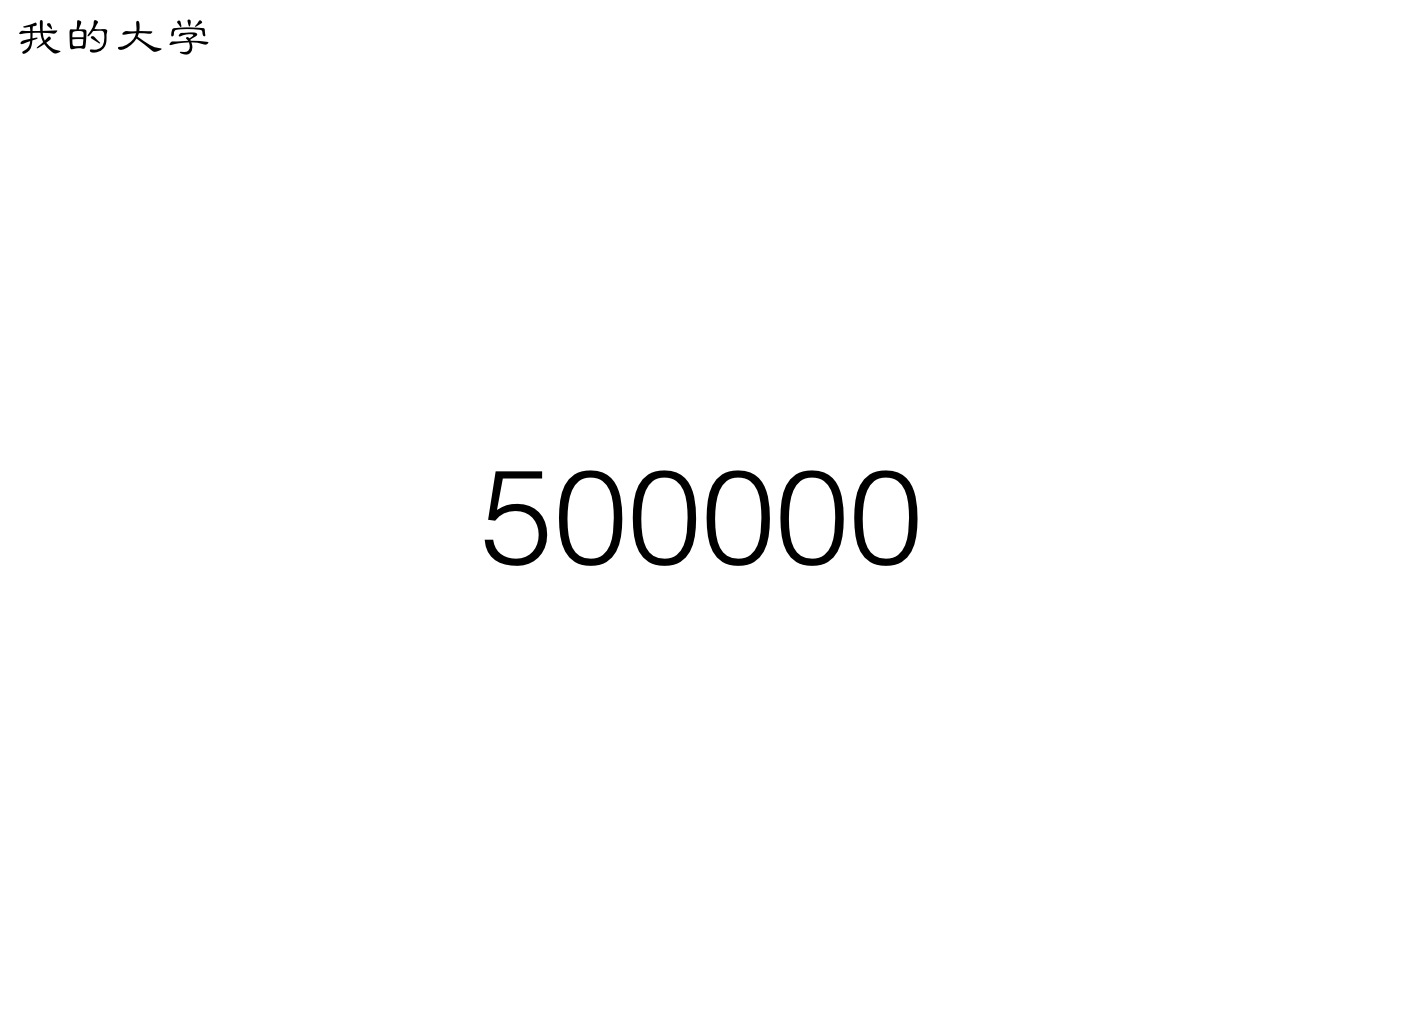 总共写了 50 万字